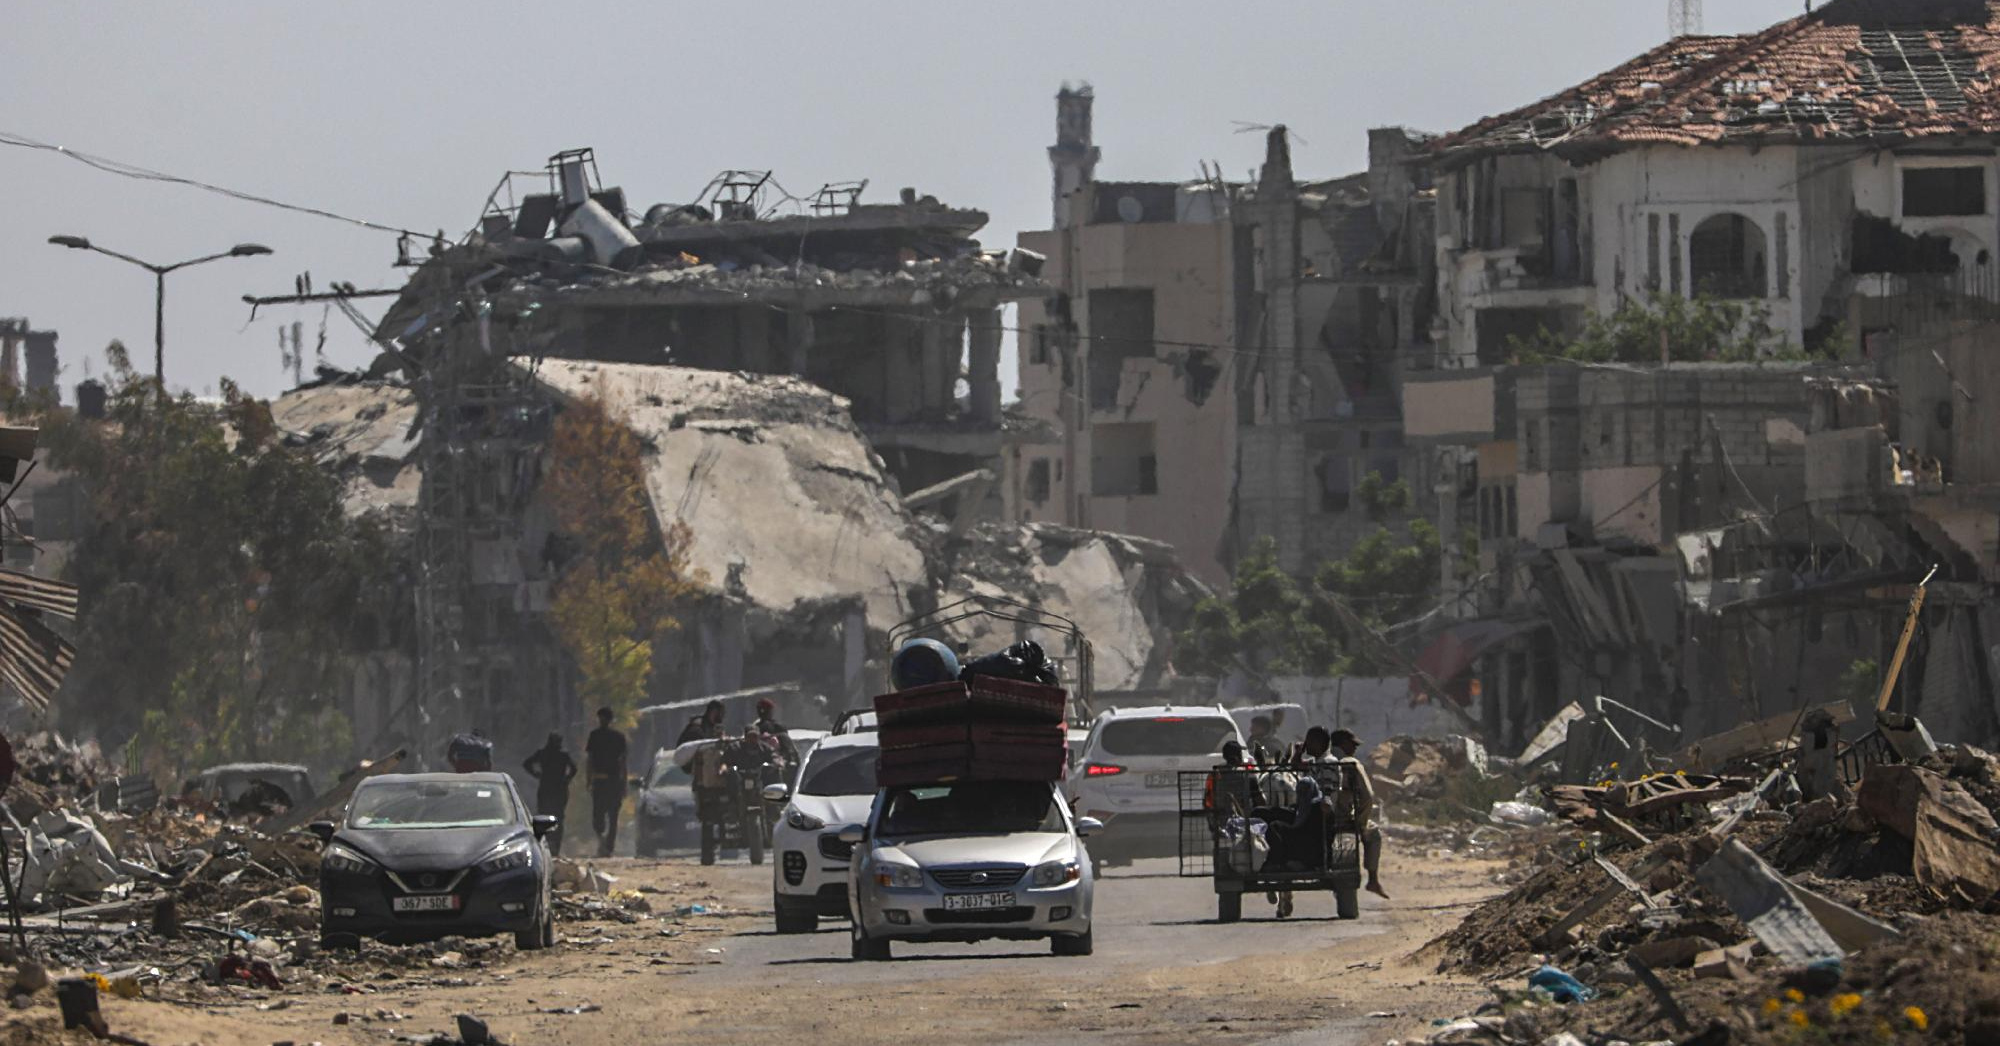 Óránként kétszáz palesztin hagyja el Rafahot – közölte az ENSZ